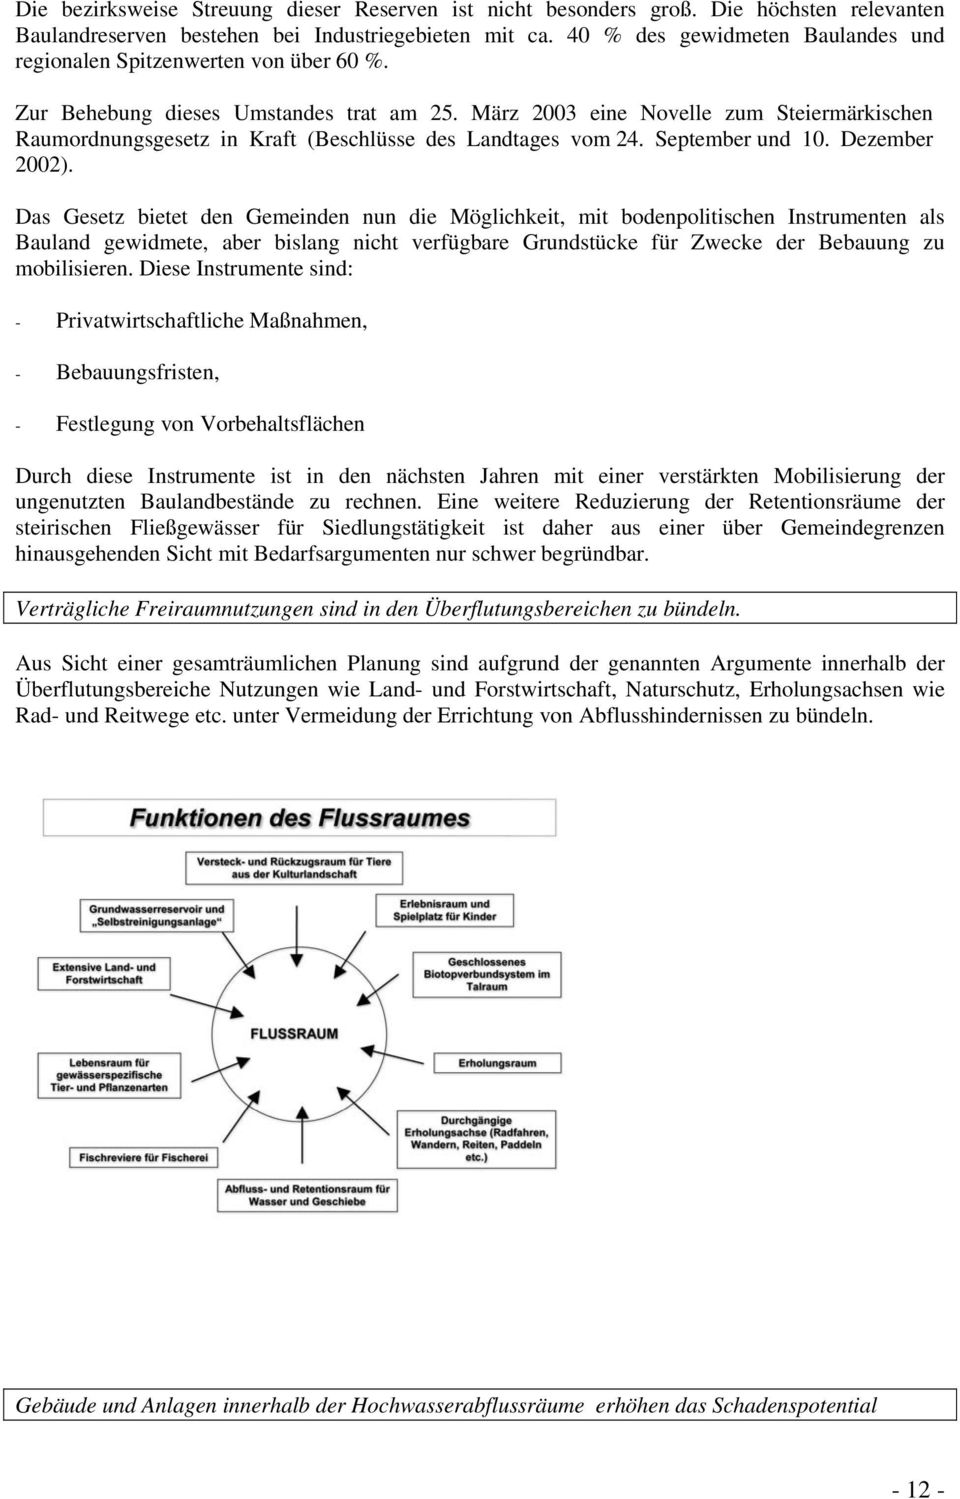 März 2003 eine Novelle zum Steiermärkischen Raumordnungsgesetz in Kraft (Beschlüsse des Landtages vom 24. September und 10. Dezember 2002).